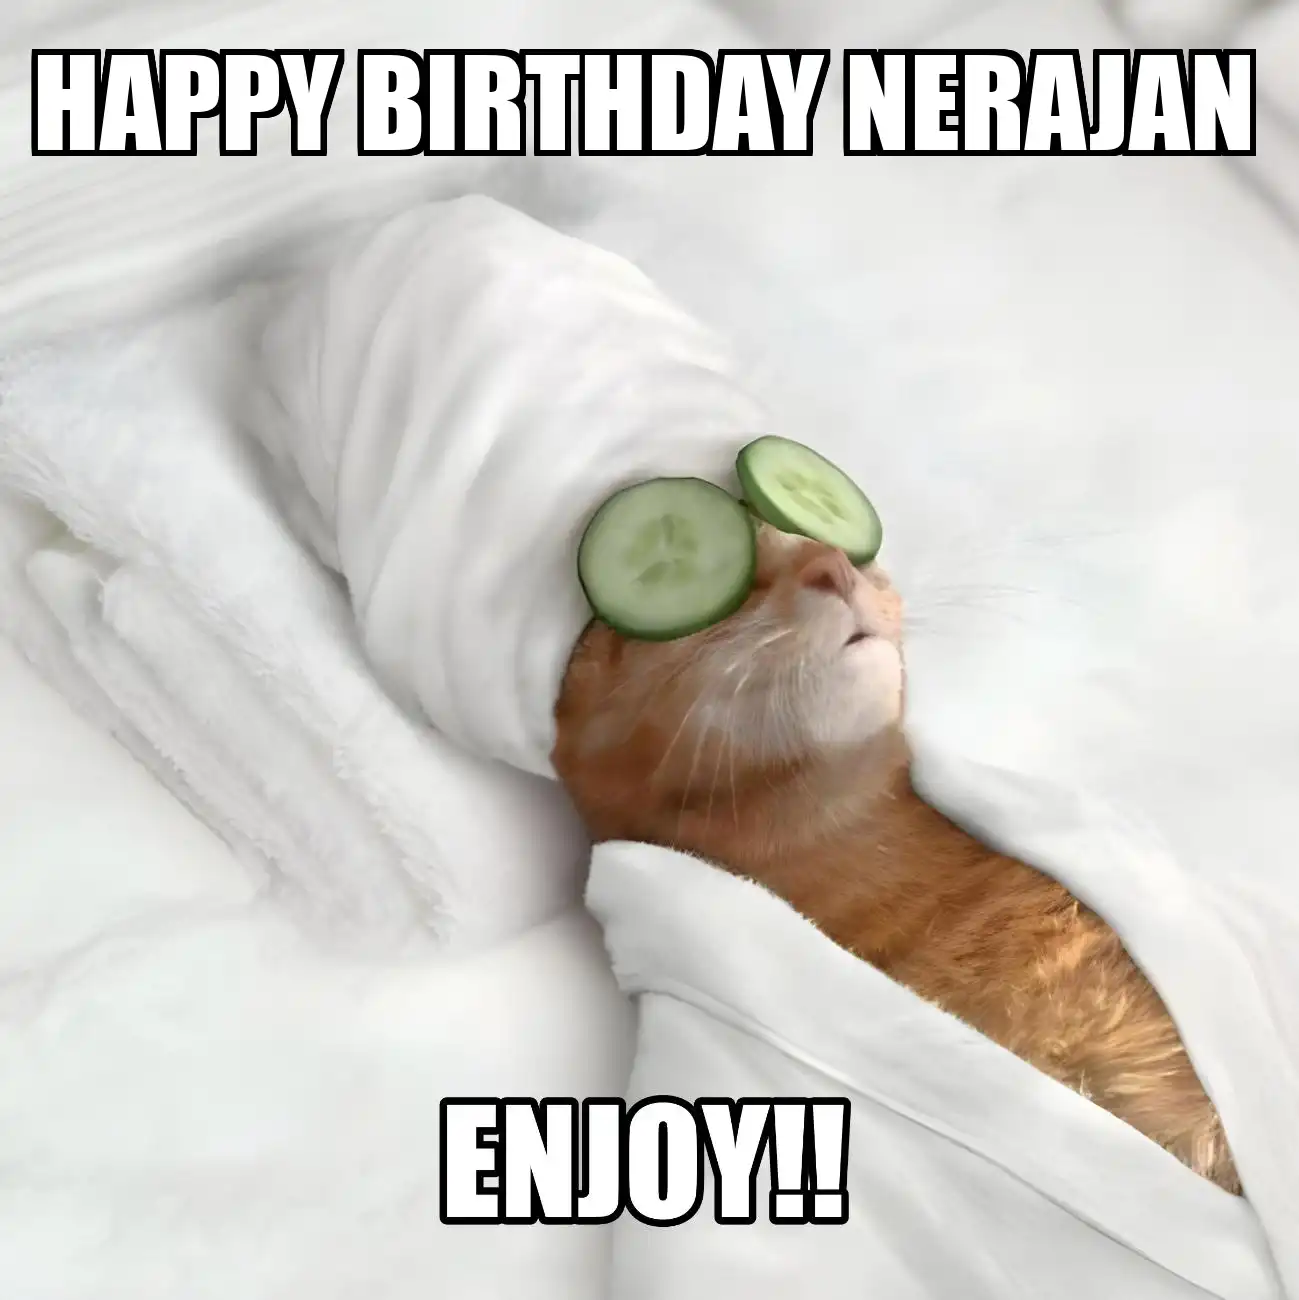 Happy Birthday Nerajan Enjoy Cat Meme